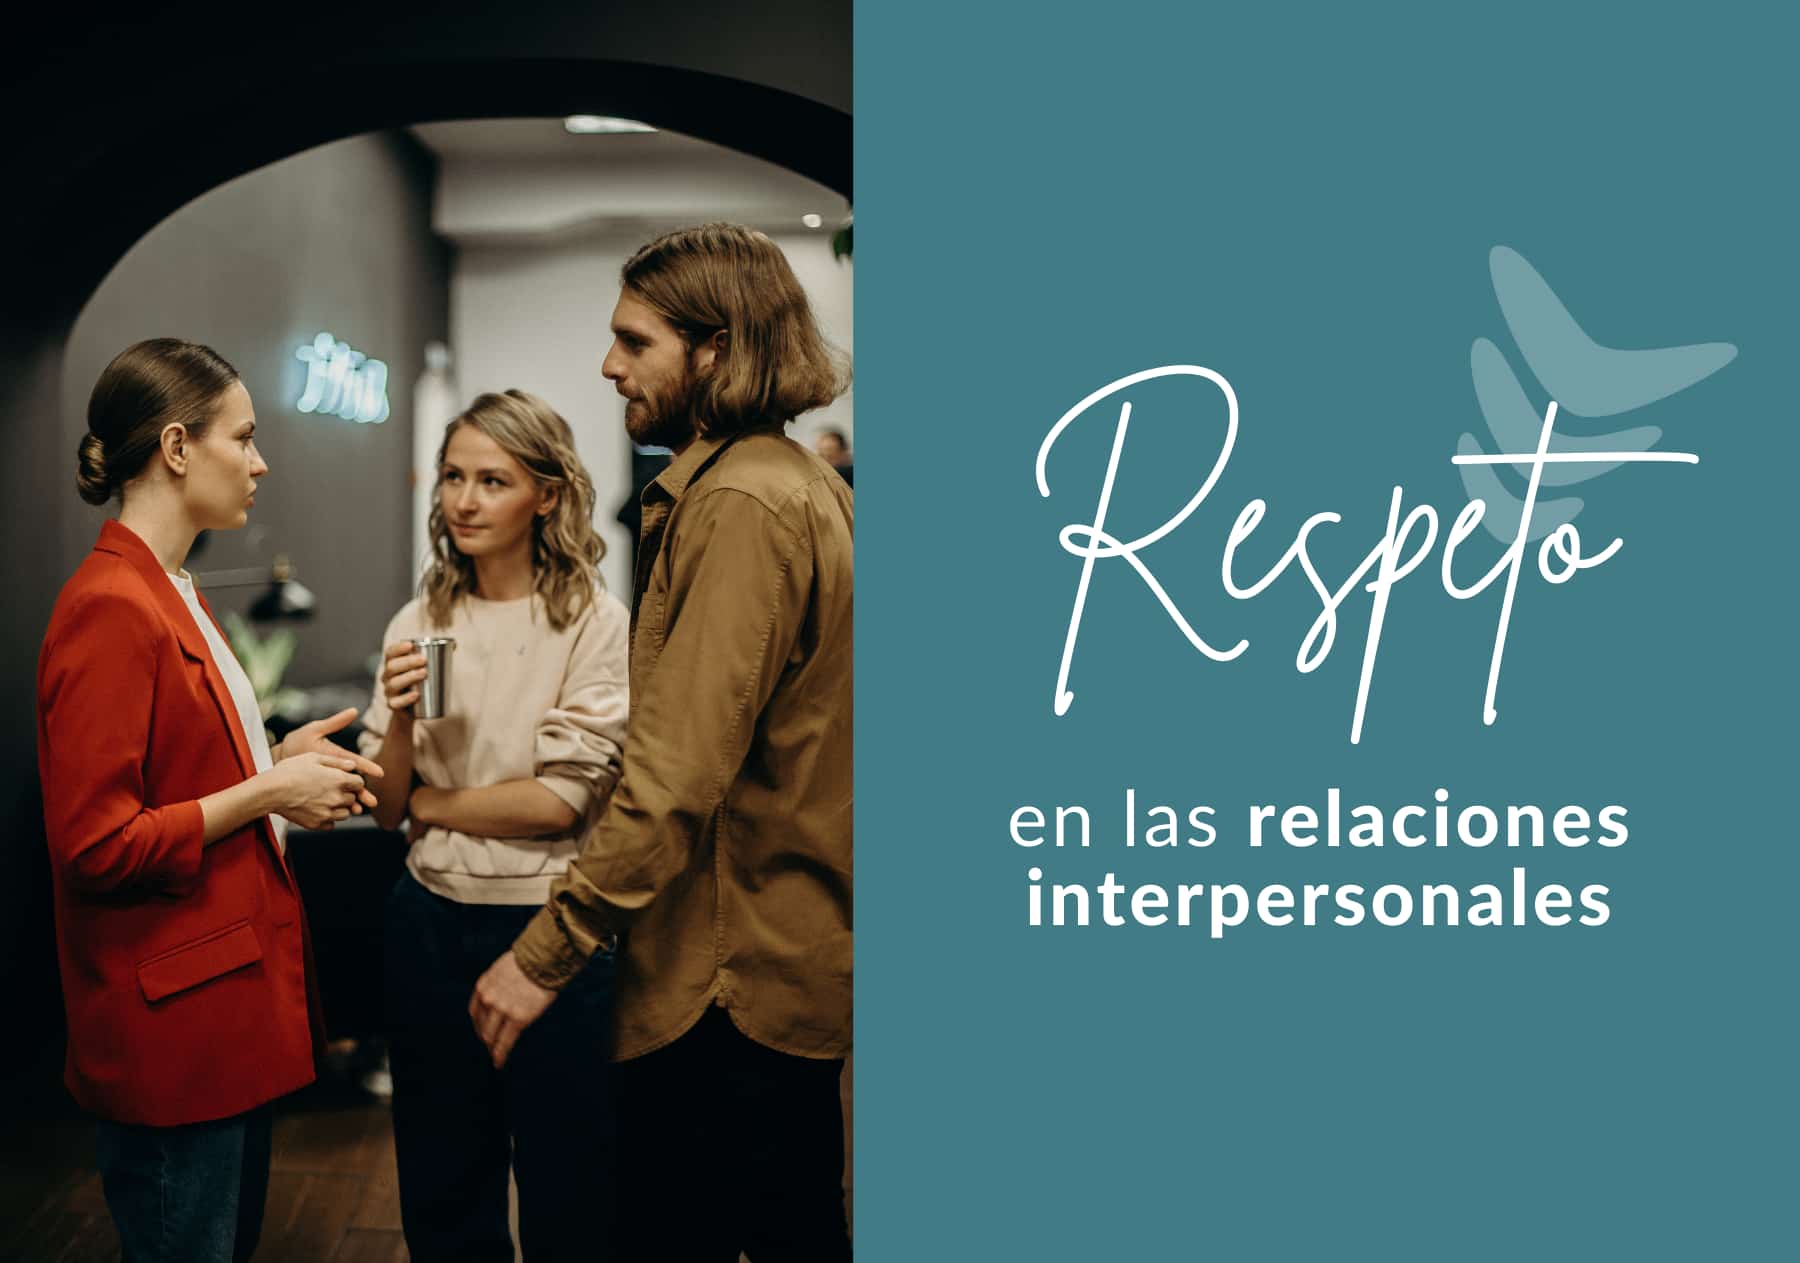 Hablamos de qué es el respeto en las relaciones interpersonales, cómo hacernos respetar y cómo hacer al otro sentirse respetado.